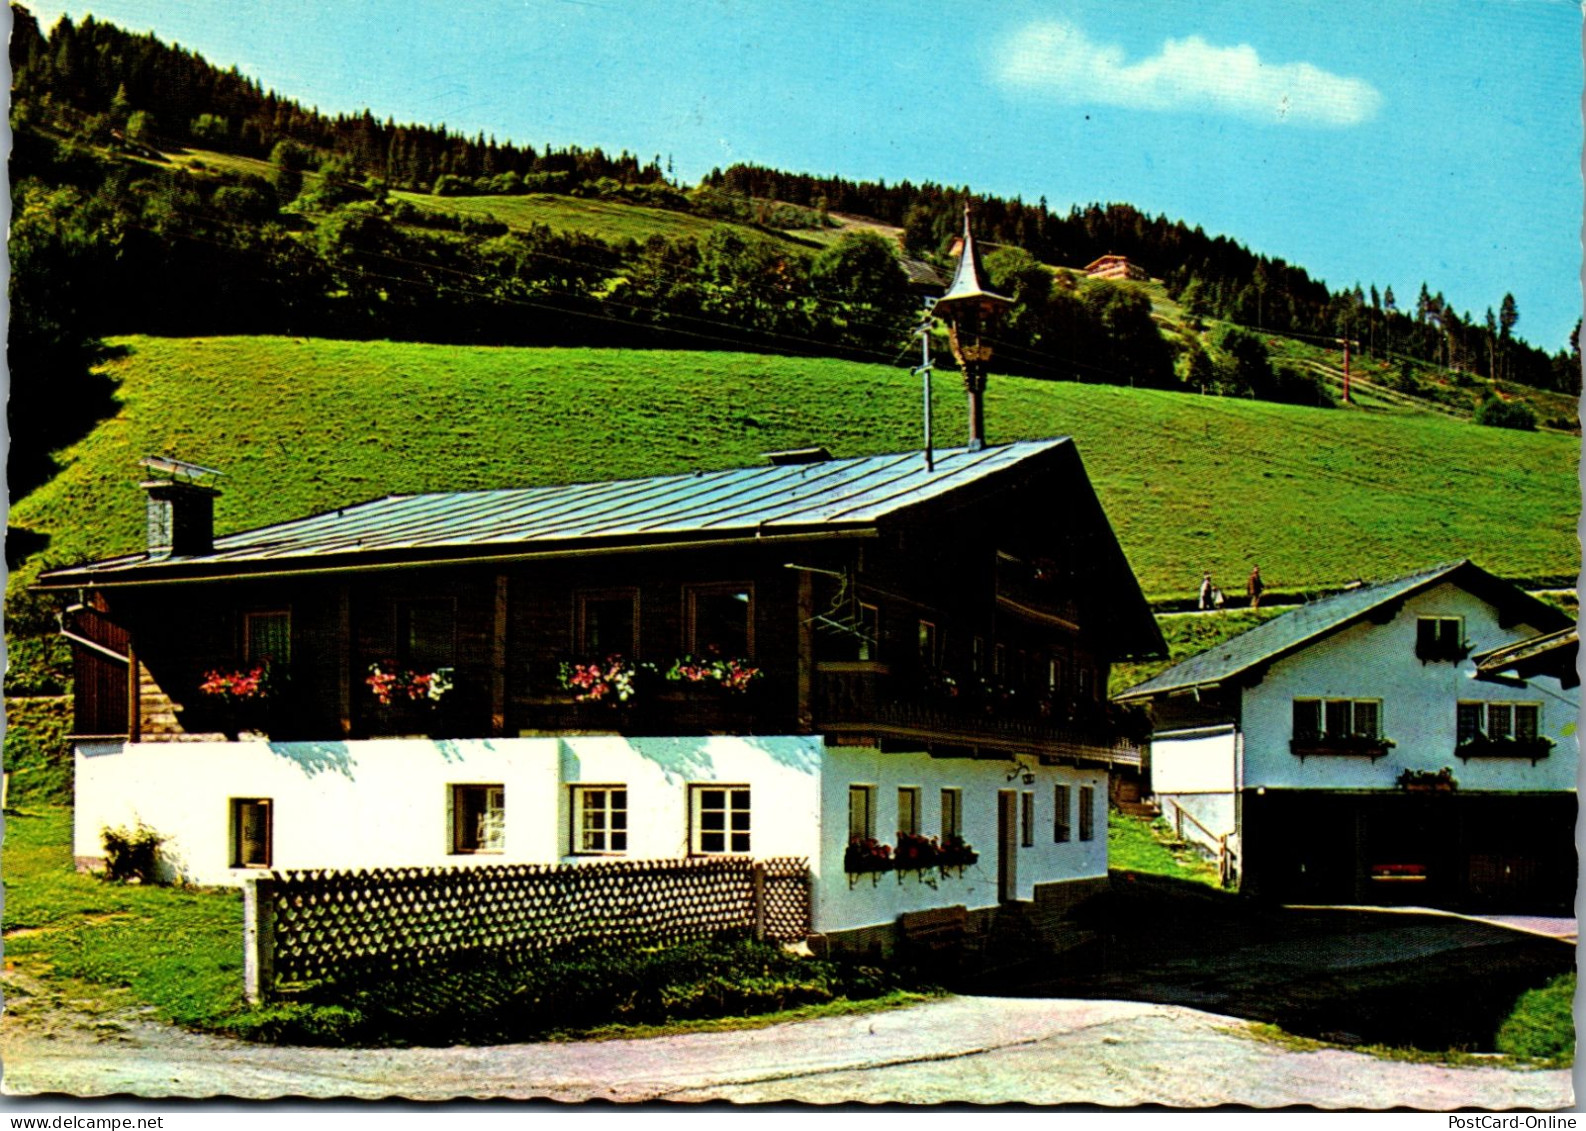 50303 - Steiermark - Pichl , Enns , Pension Heisshof , Horst Sieder - Gelaufen  - Schladming